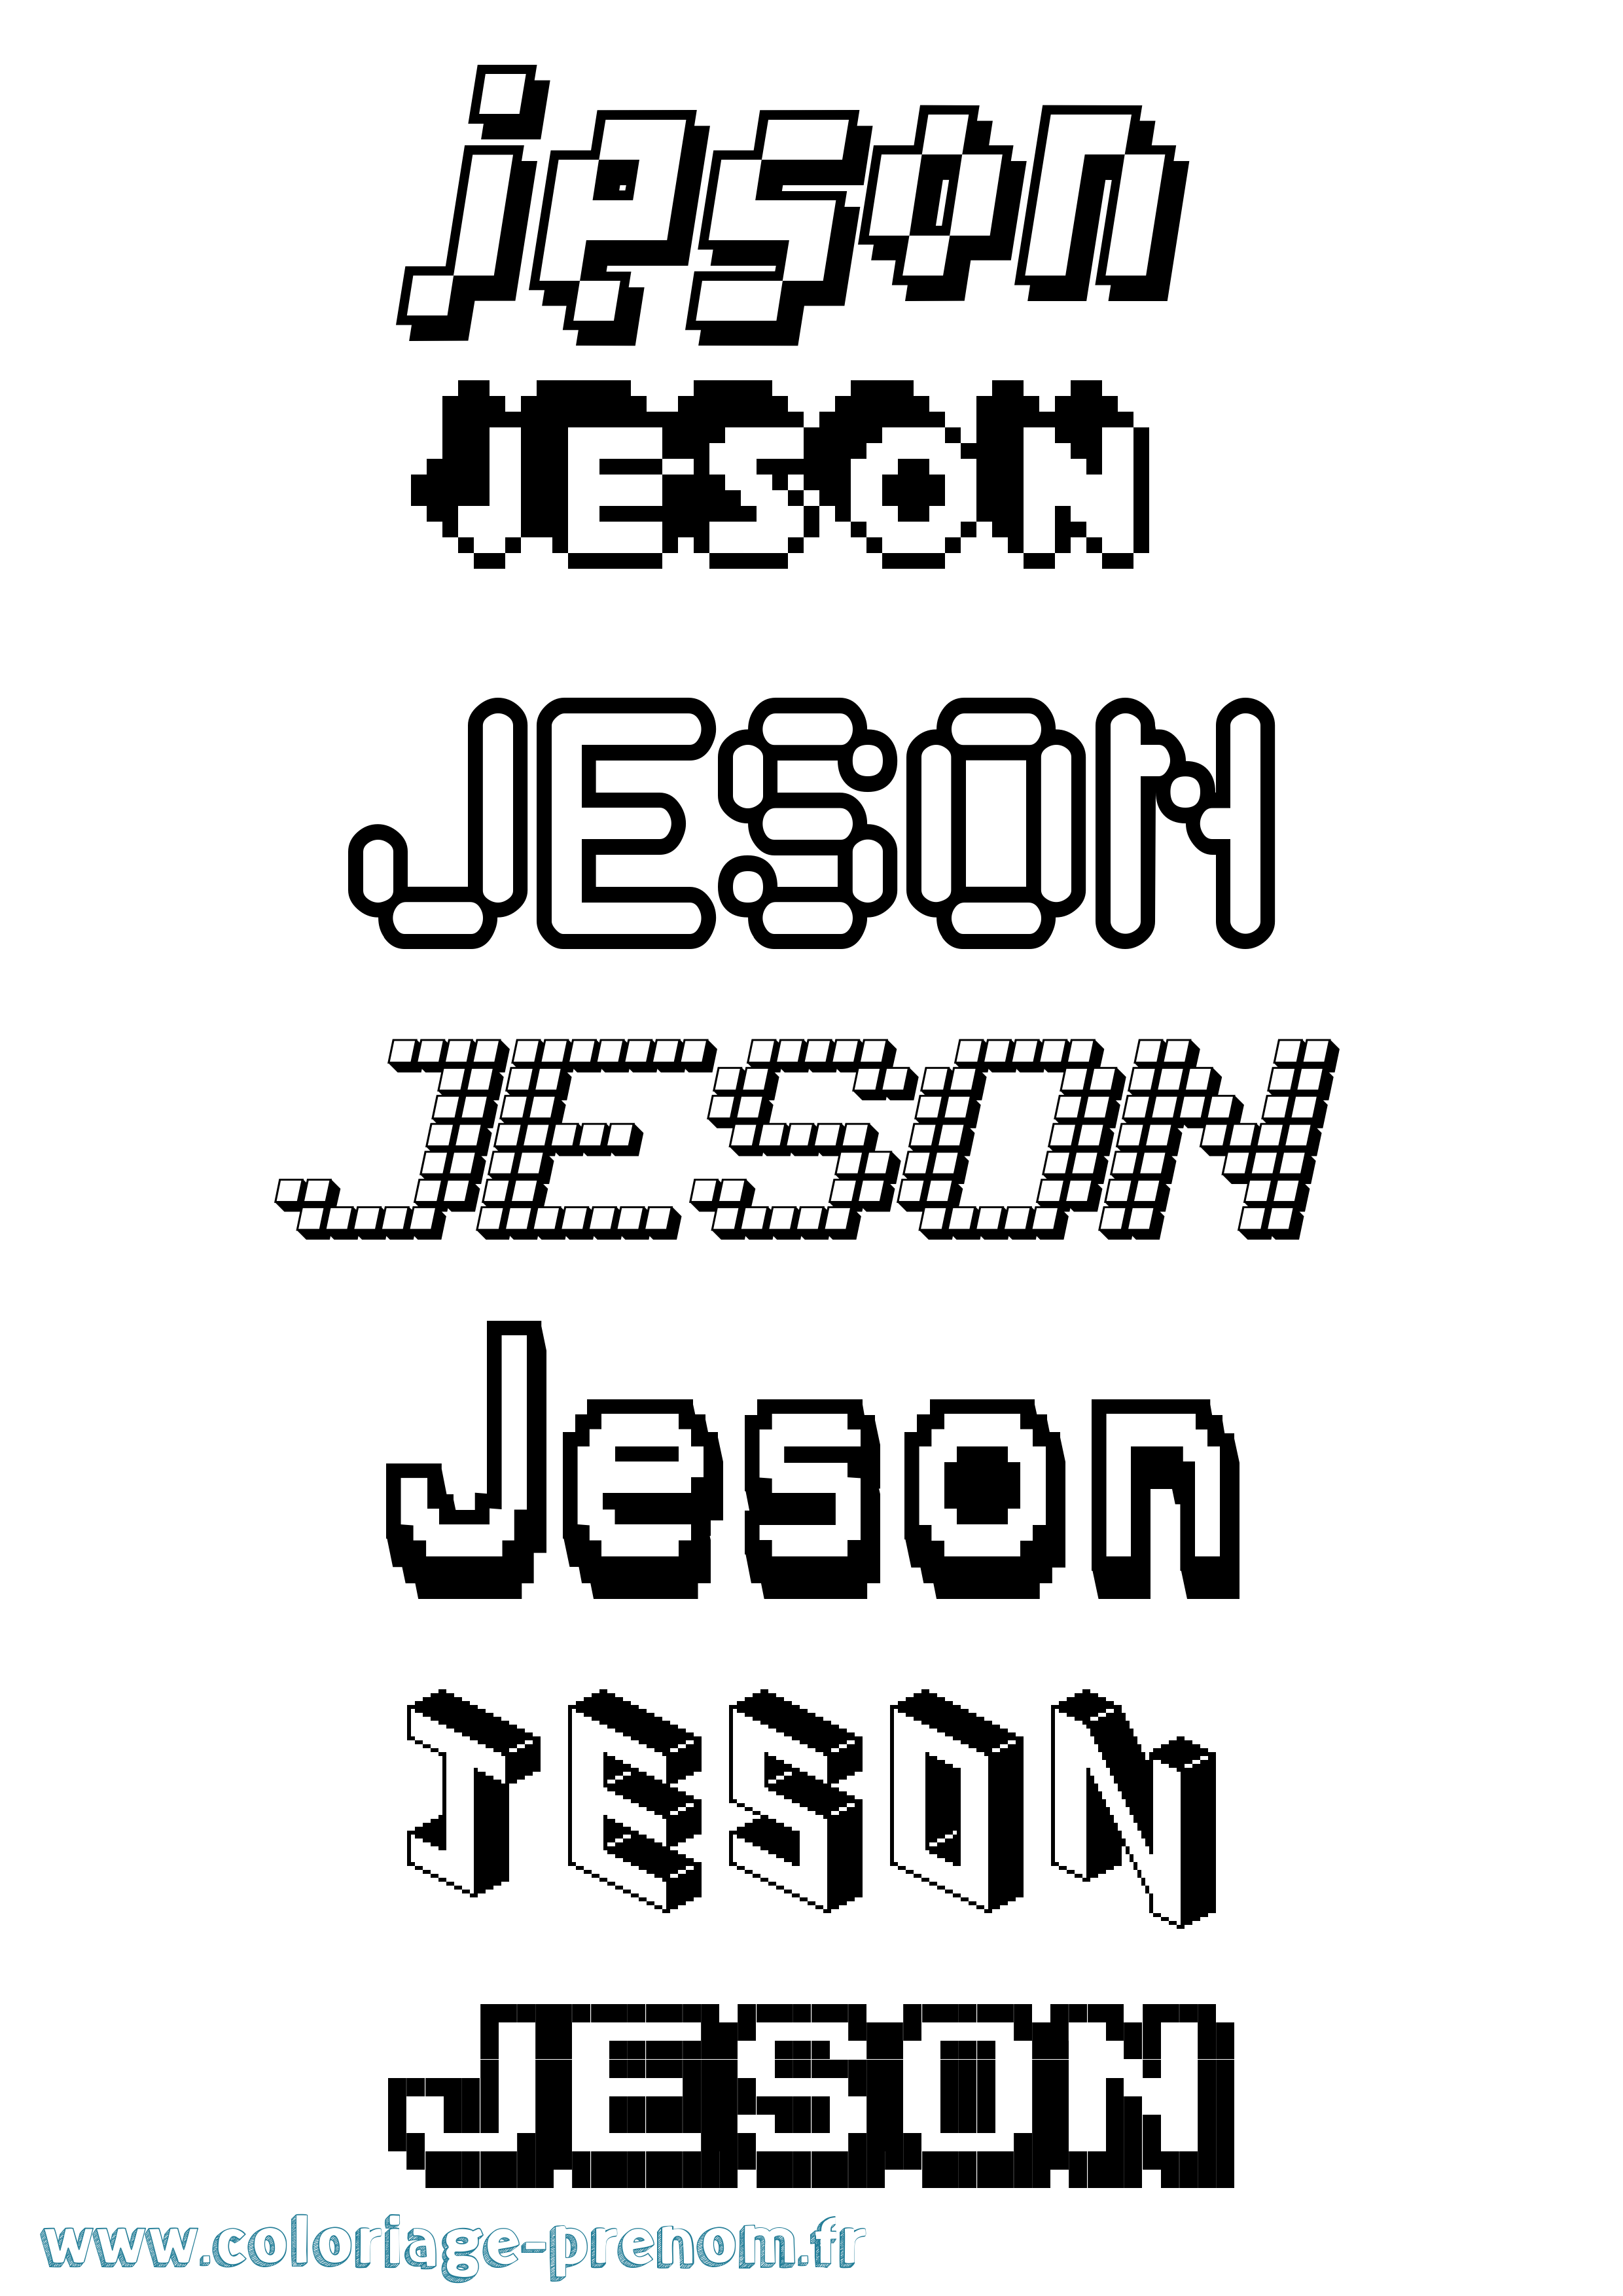 Coloriage prénom Jeson Pixel